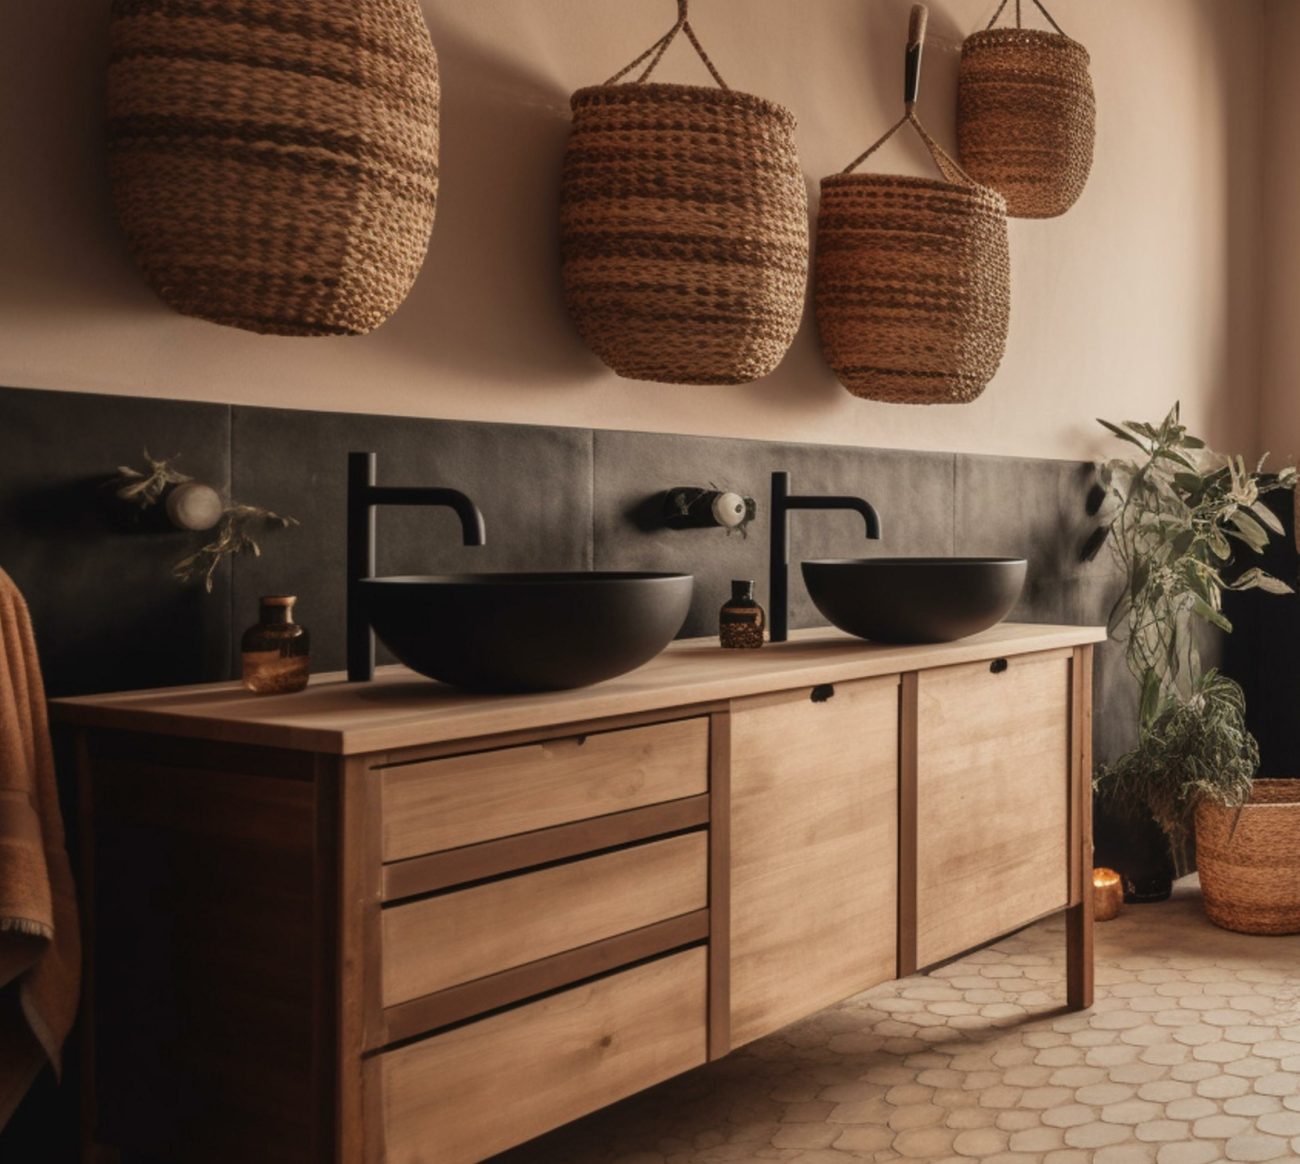 Salle de bain rustique moderne et chic avec des carreaux en terre cuite noire